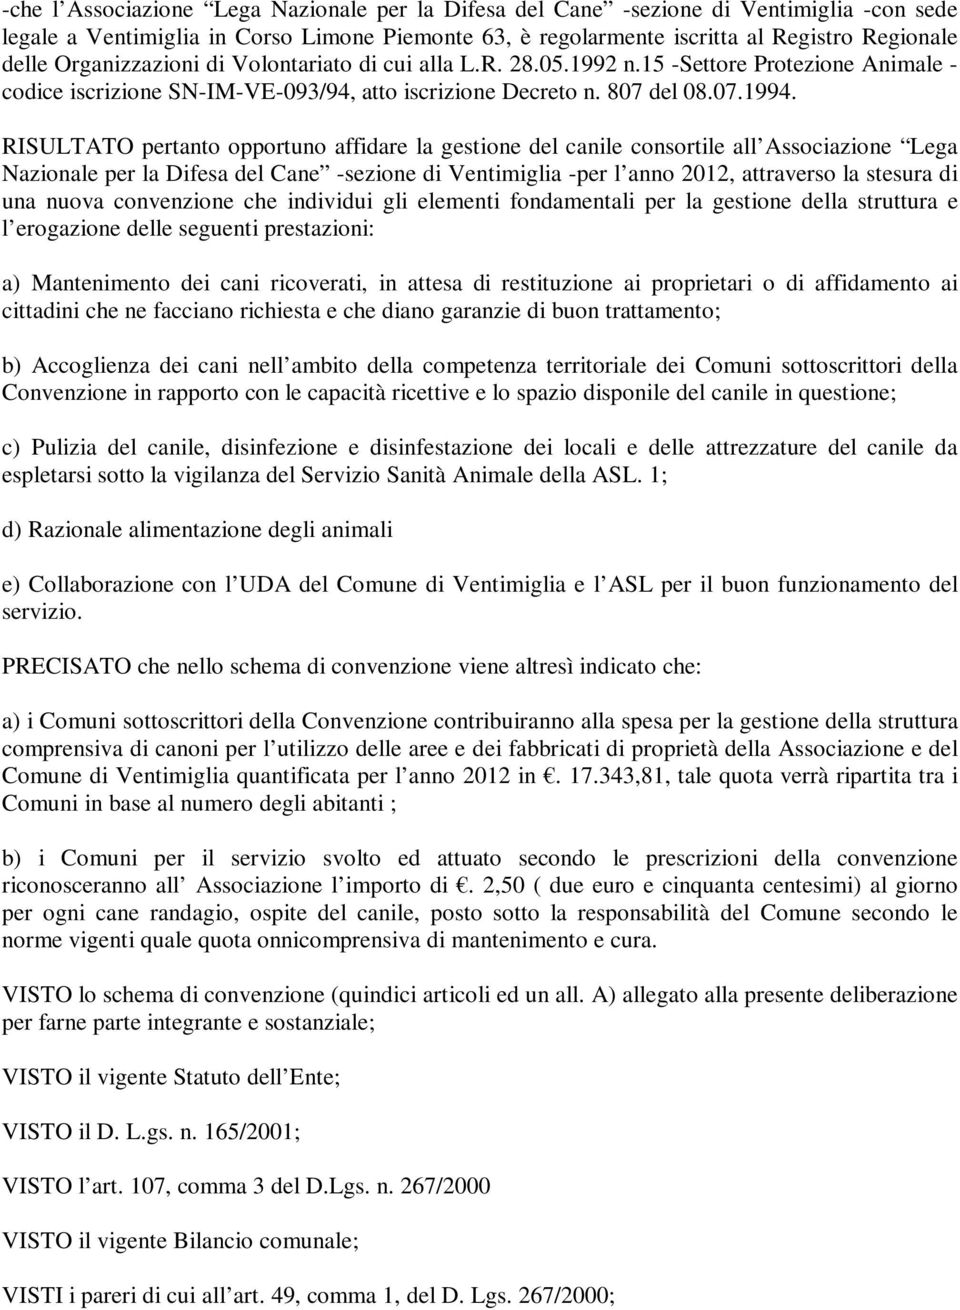 RISULTATO pertanto opportuno affidare la gestione del canile consortile all Associazione Lega Nazionale per la Difesa del Cane -sezione di Ventimiglia -per l anno 2012, attraverso la stesura di una